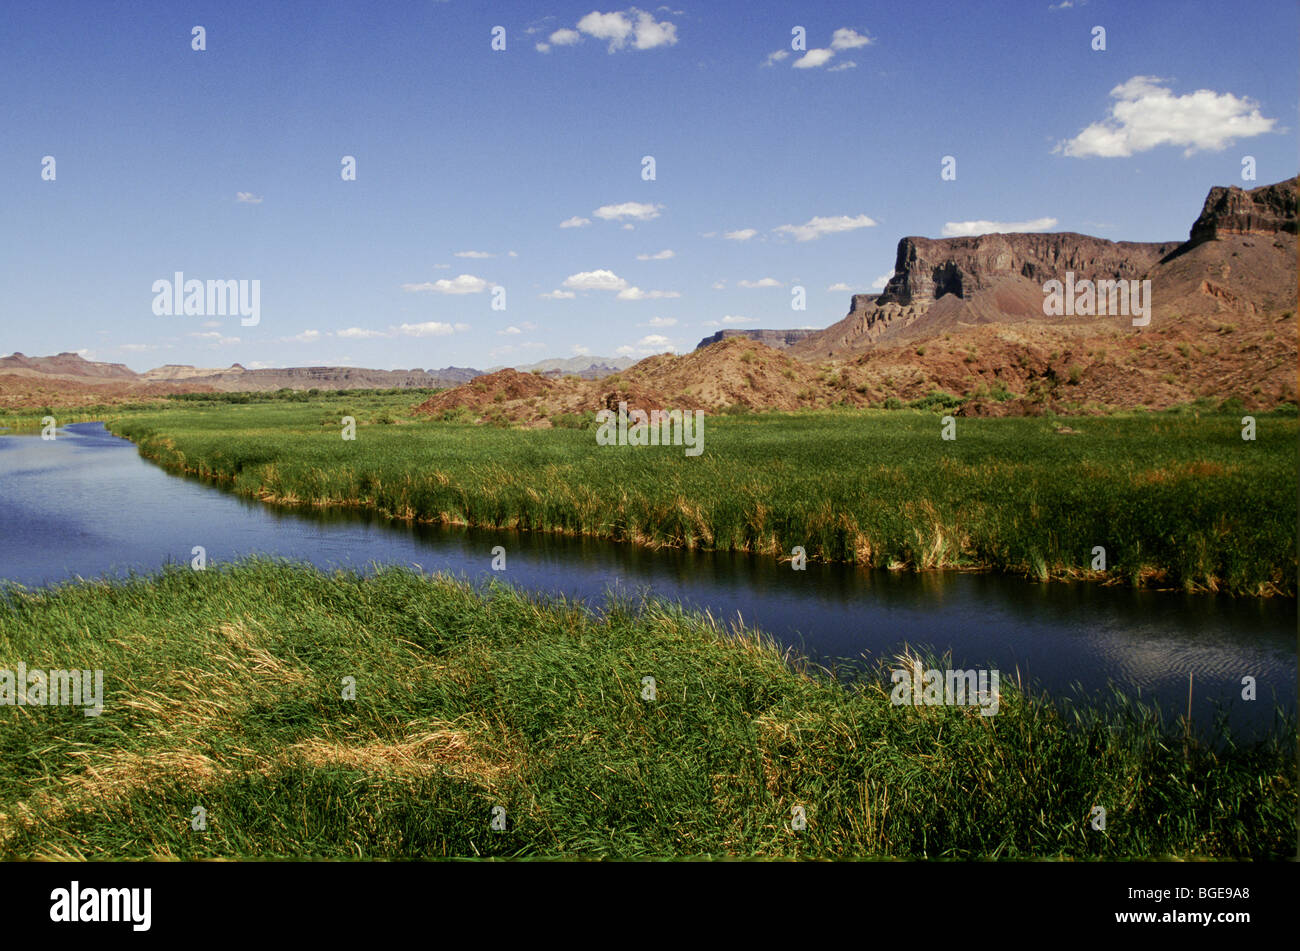 Colorado river running through a valley in Arizona, USA Stock Photo